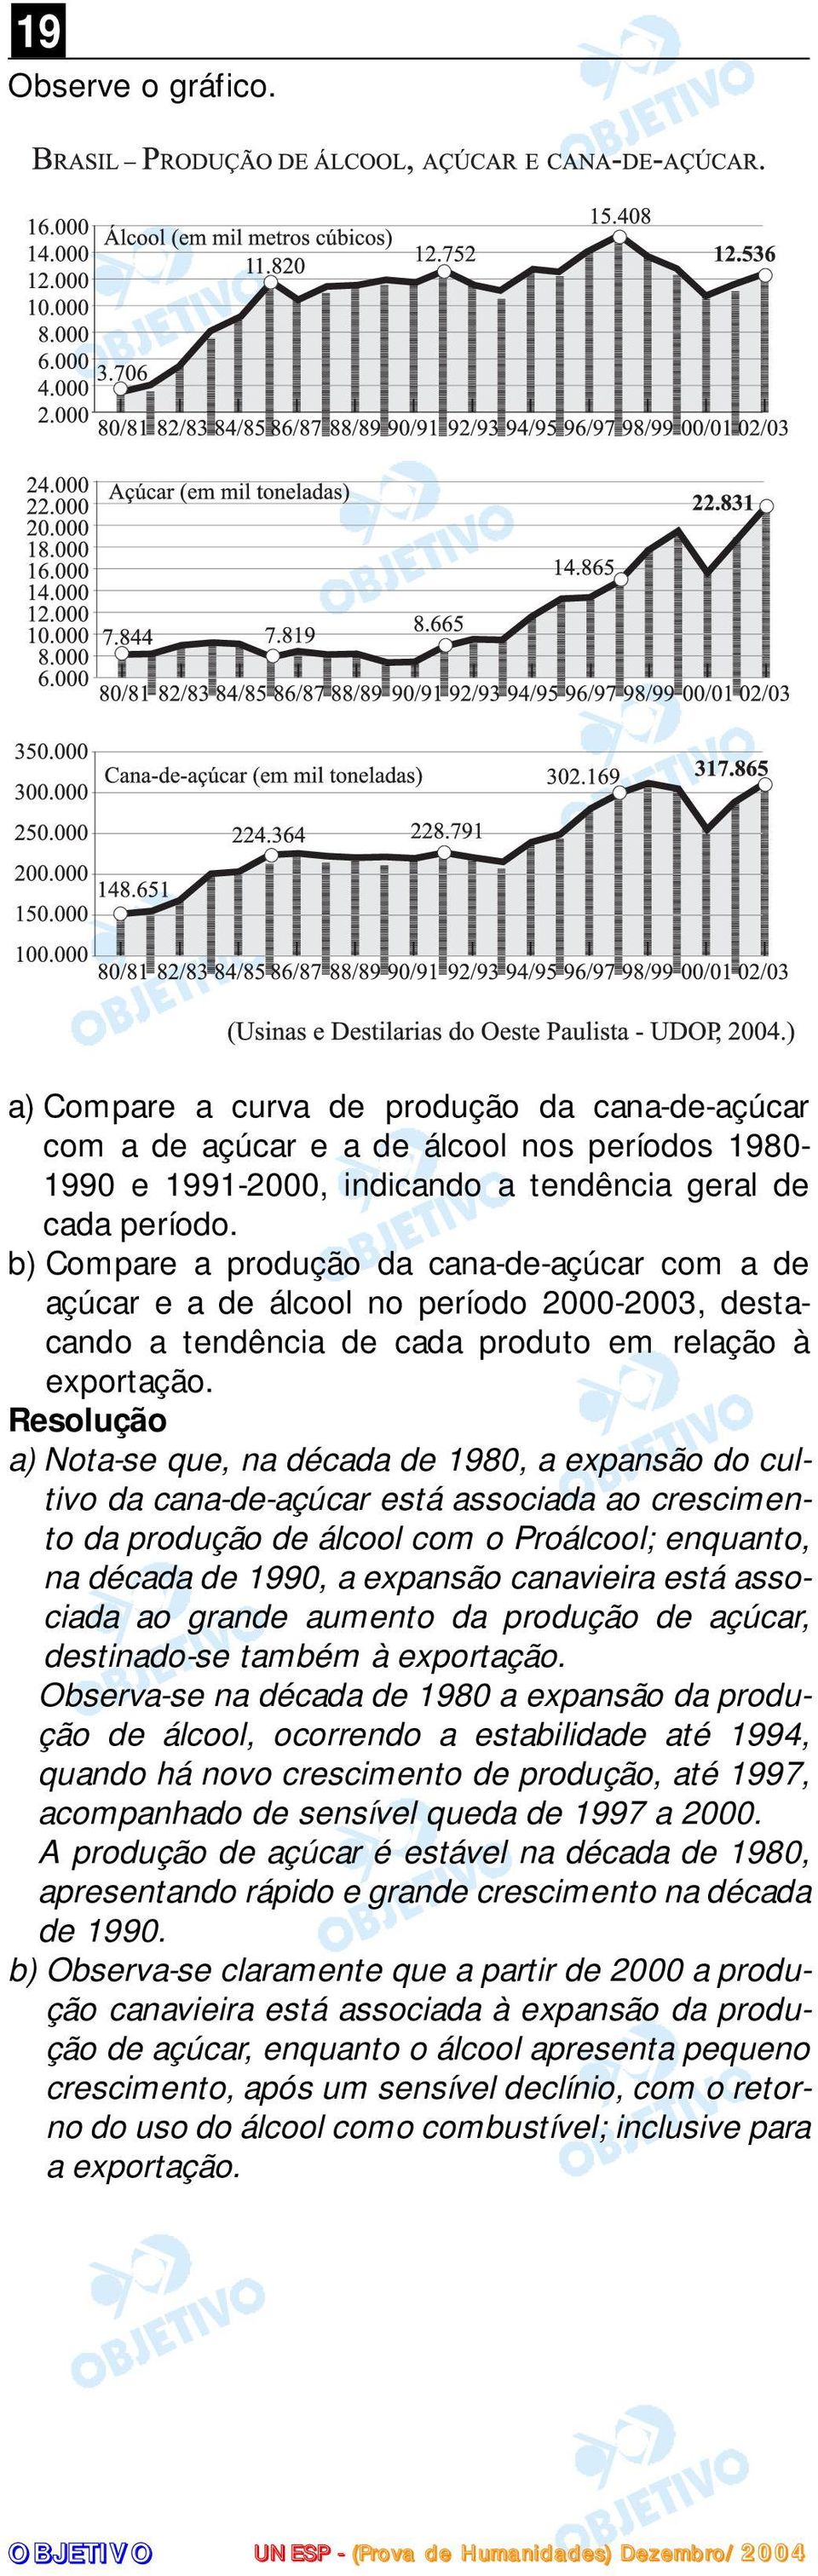 a) Nota-se que, na década de 1980, a expansão do cultivo da cana-de-açúcar está associada ao crescimento da produção de álcool com o Proálcool; enquanto, na década de 1990, a expansão canavieira está